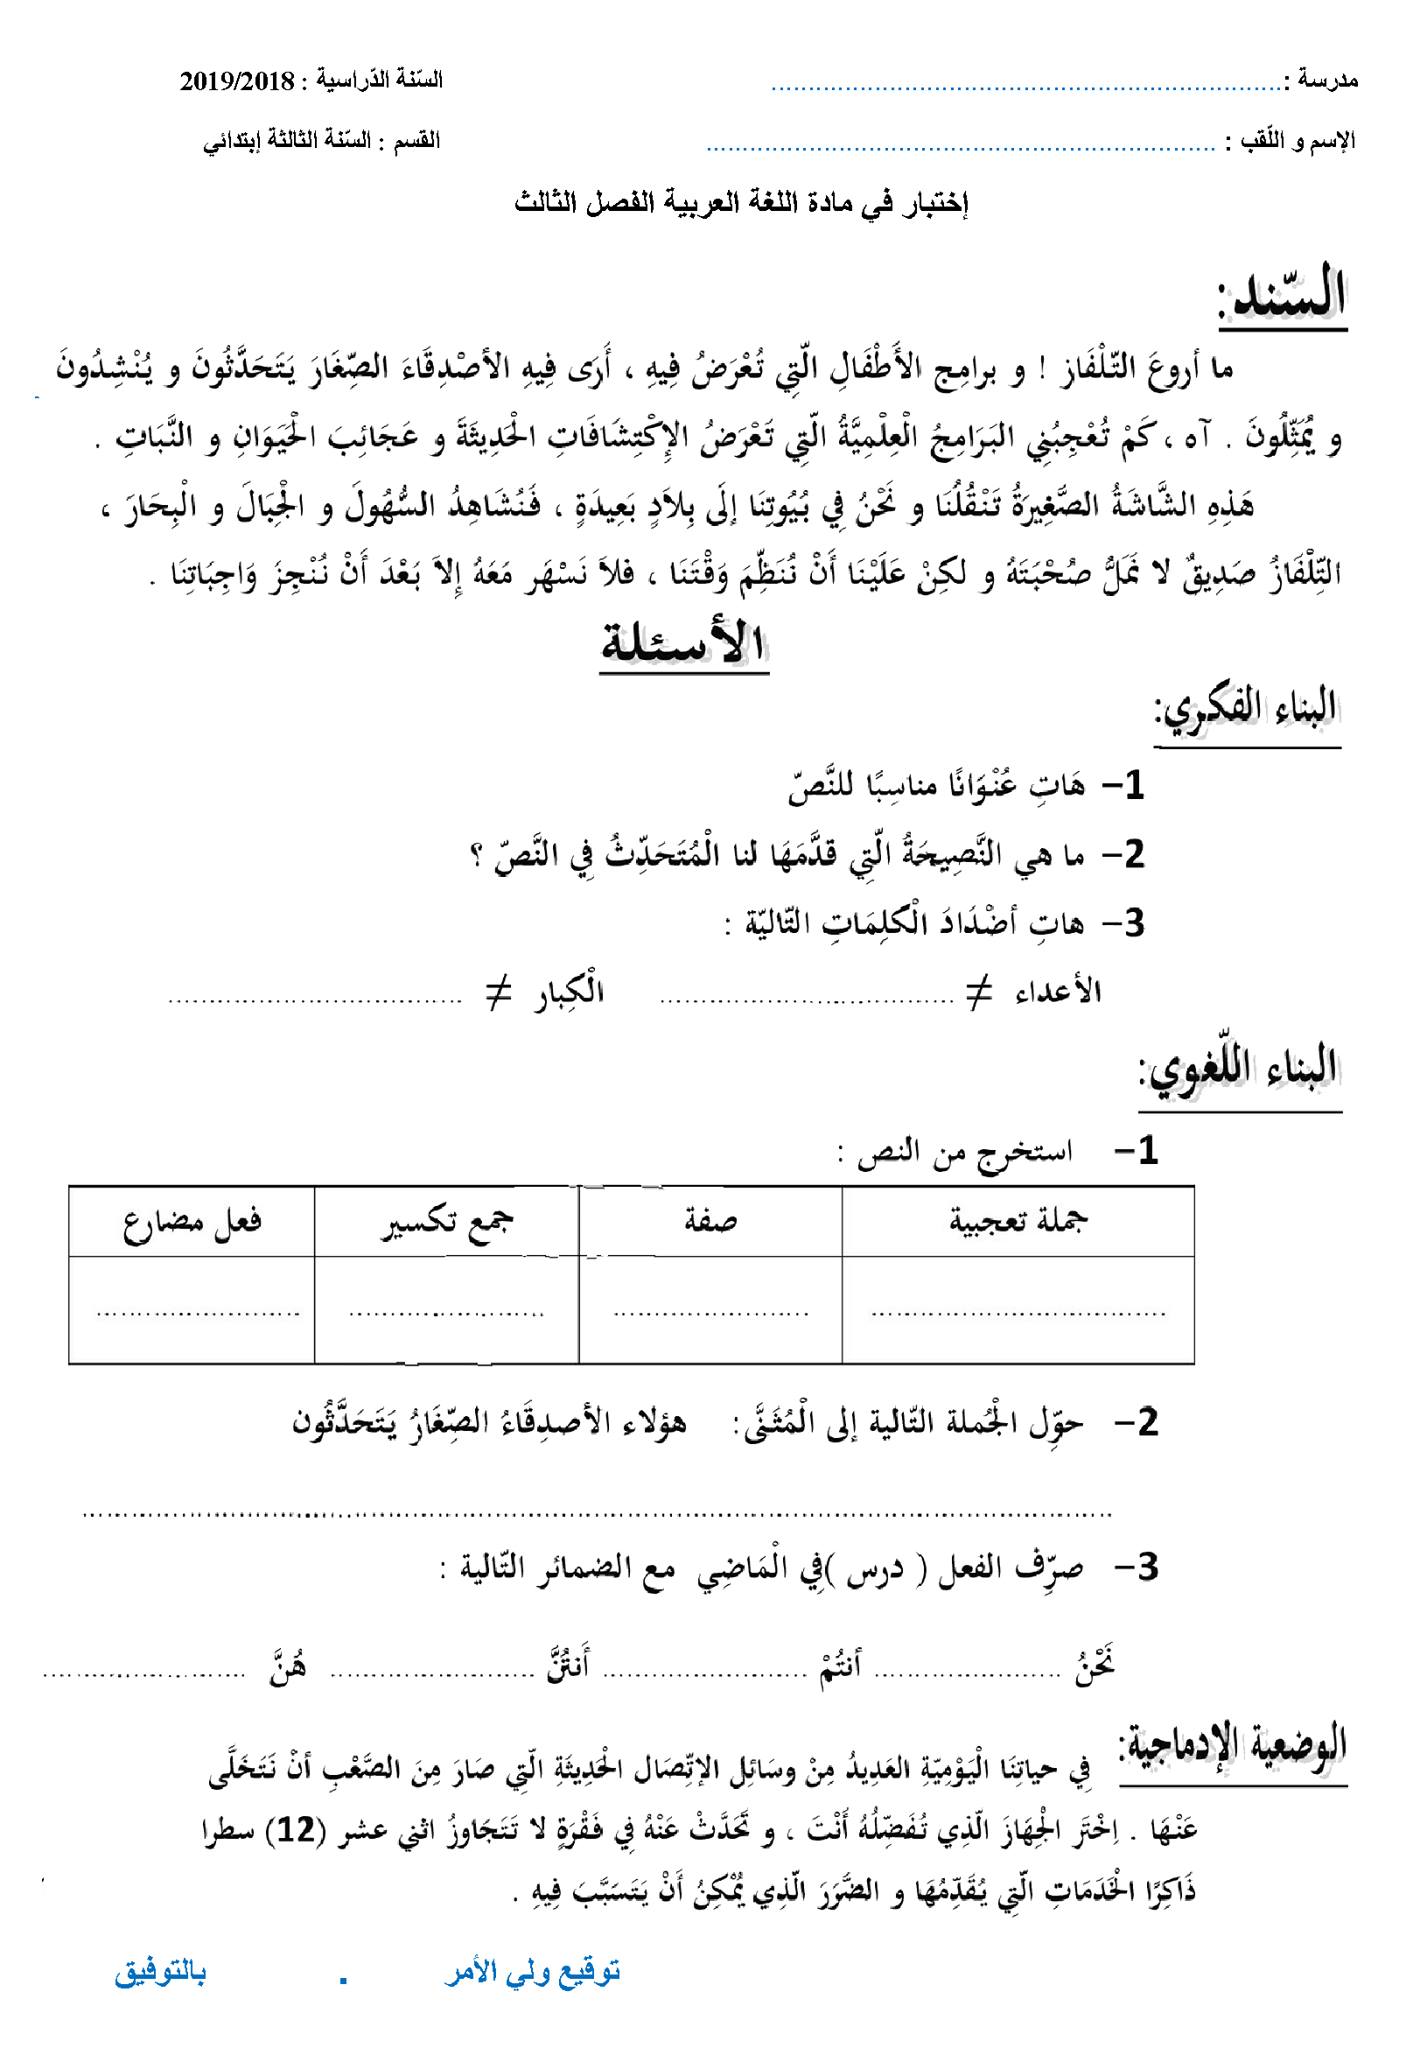 اختبار الفصل الثالث في اللغة العربية | السنة الثالثة ابتدائي | الموضوع 03